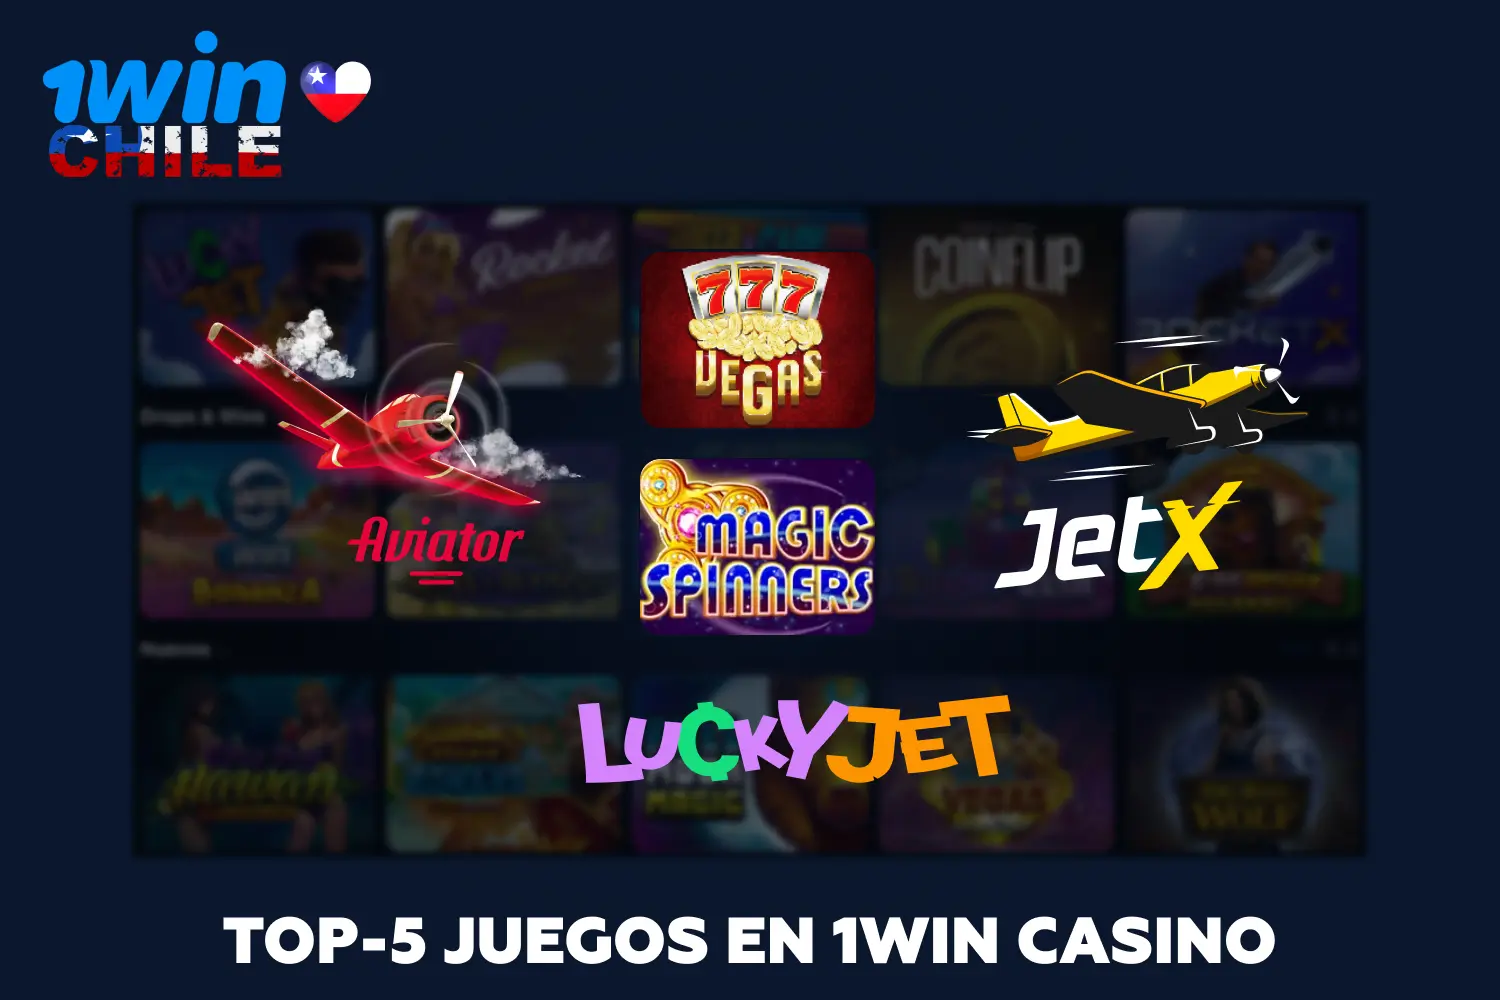 En 1win Casino, los jugadores chilenos tienen a su disposición una amplia gama de juegos, incluyendo 5 de los más populares